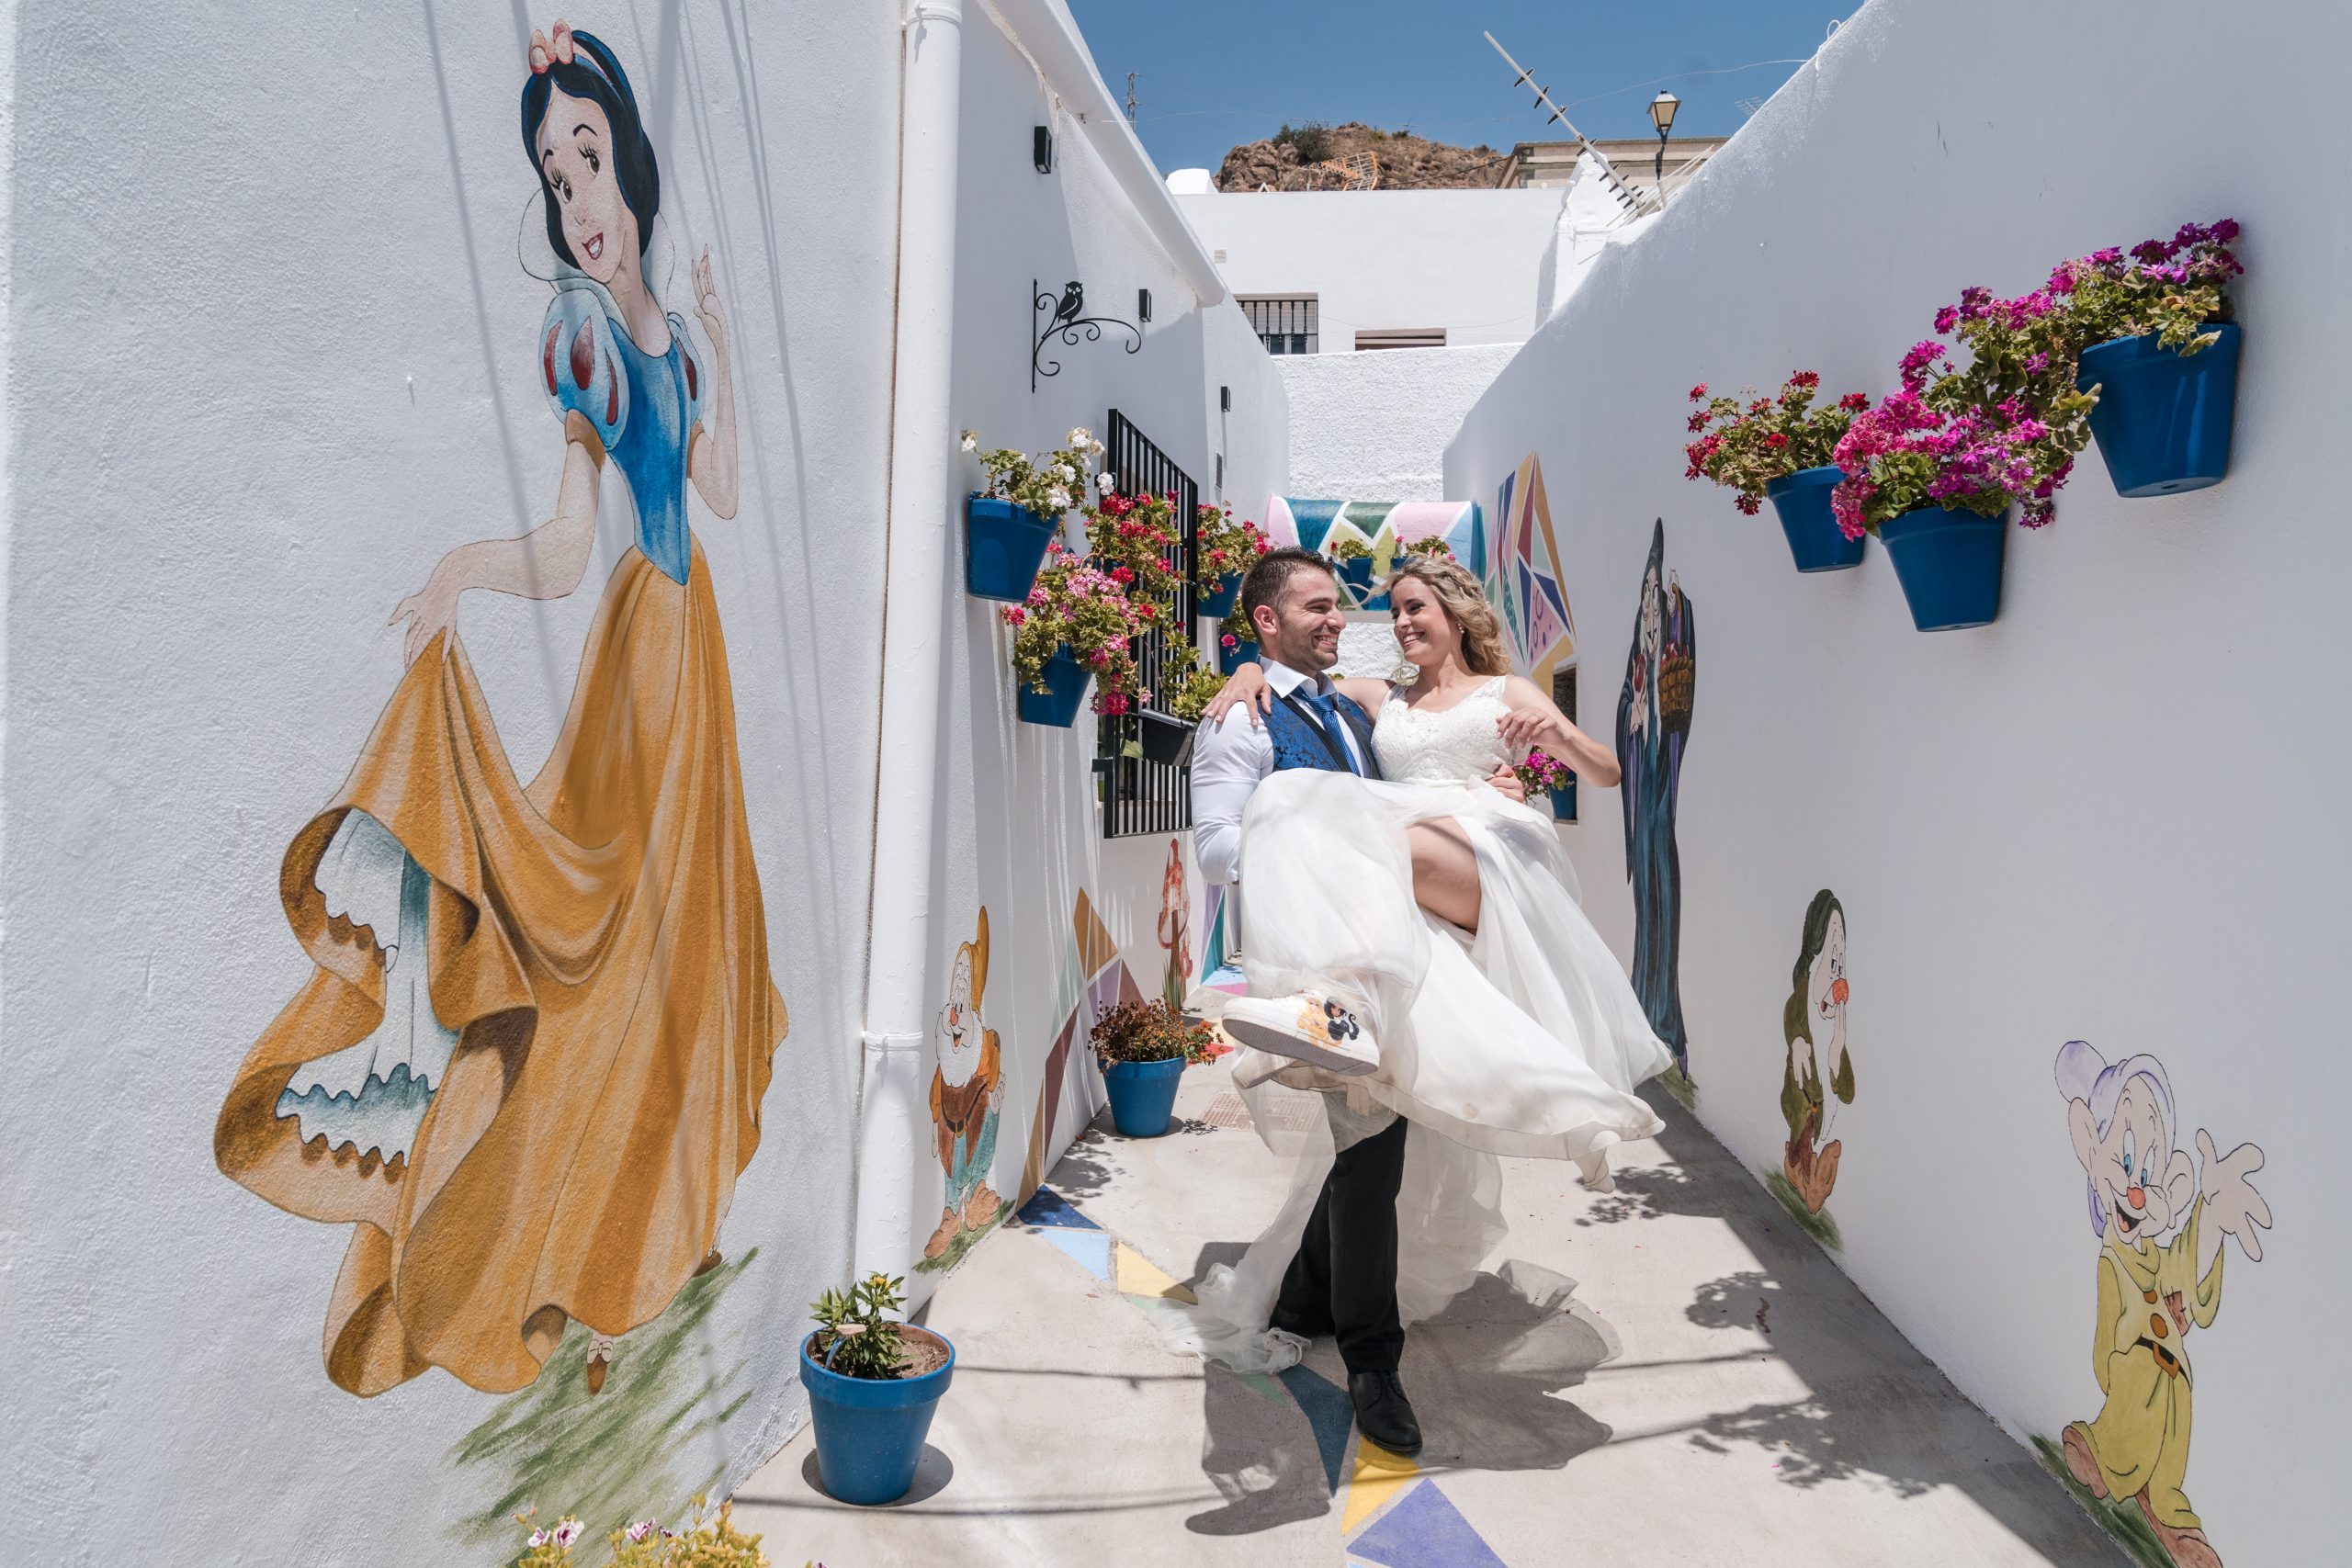 Novio llega en brazos a la novia por una calle blanca con muros pintados de personajes disney